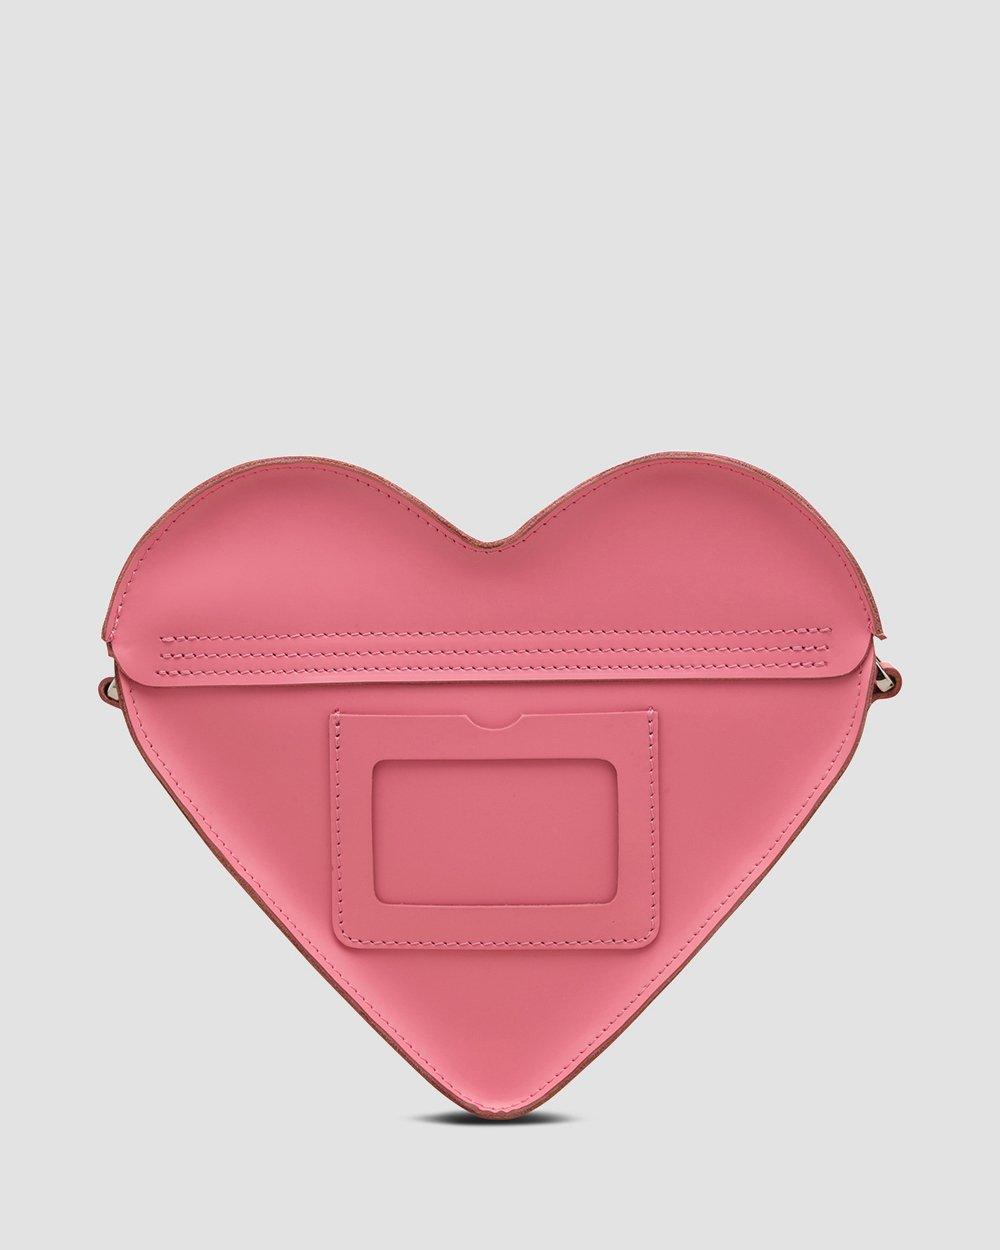 Dr. Martens 2019 Valentine's Limited Heart Bag Pink Leather